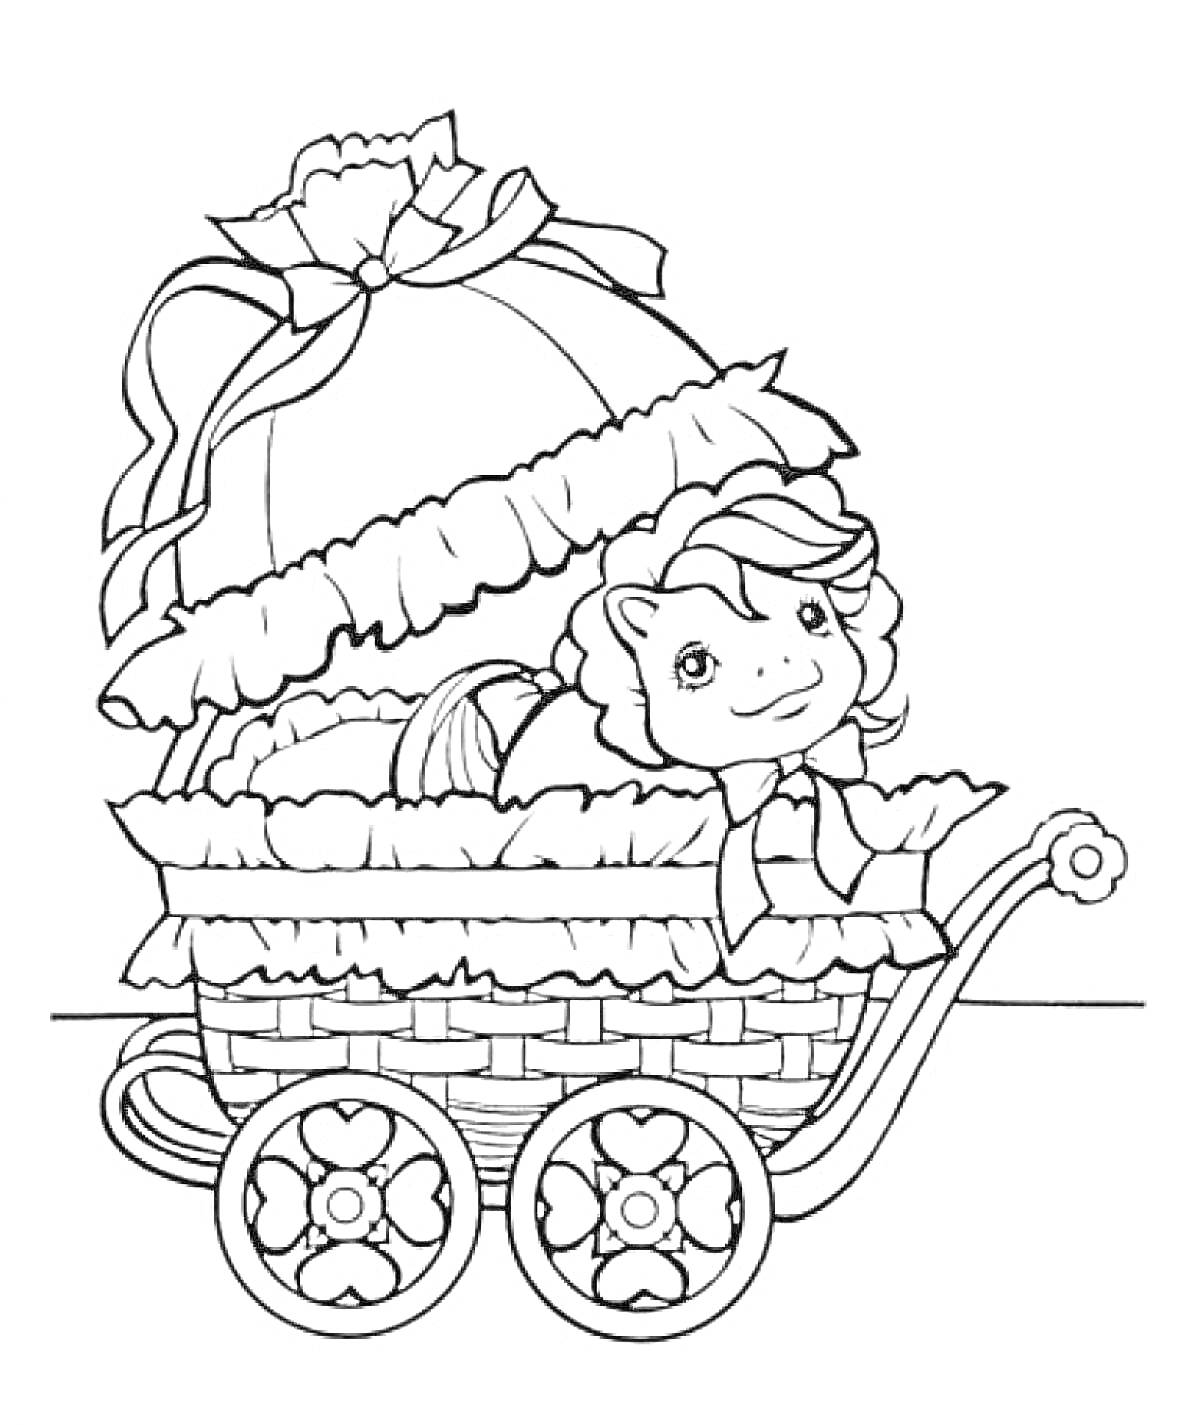 Раскраска Коляска с игрушкой в виде пони, декоративными элементами и кружевами